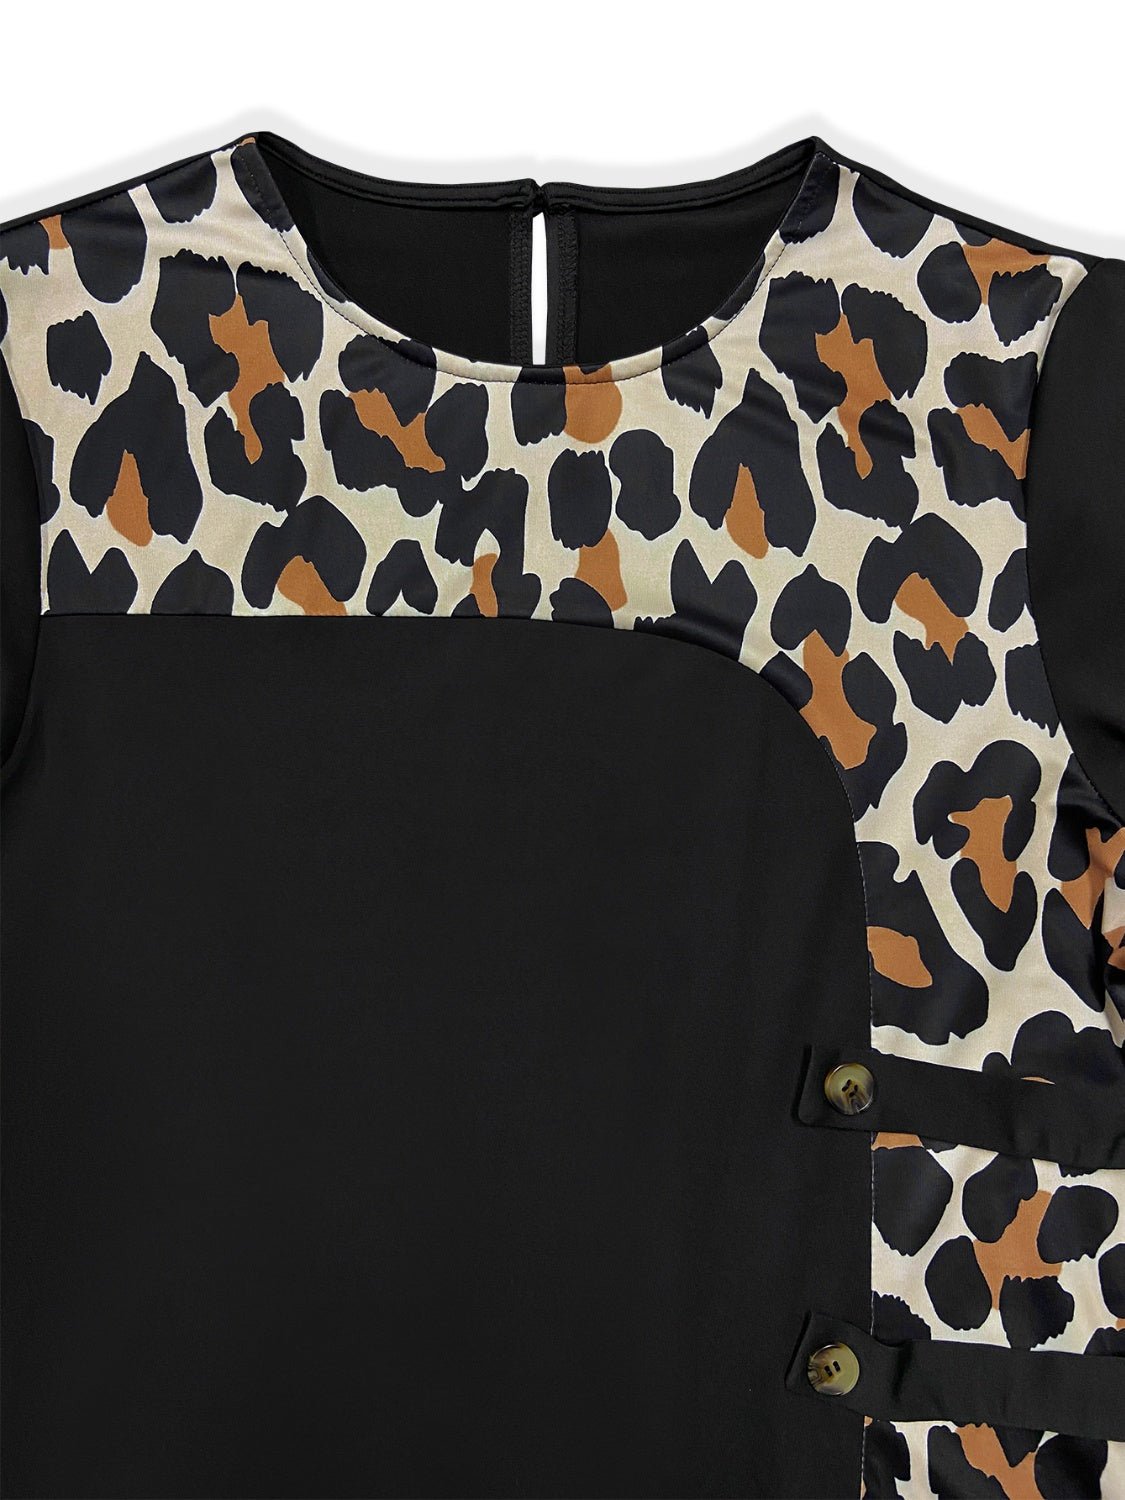 Plus Size Leopard Round Neck Long Sleeve Dress | Sugarz Chique Boutique